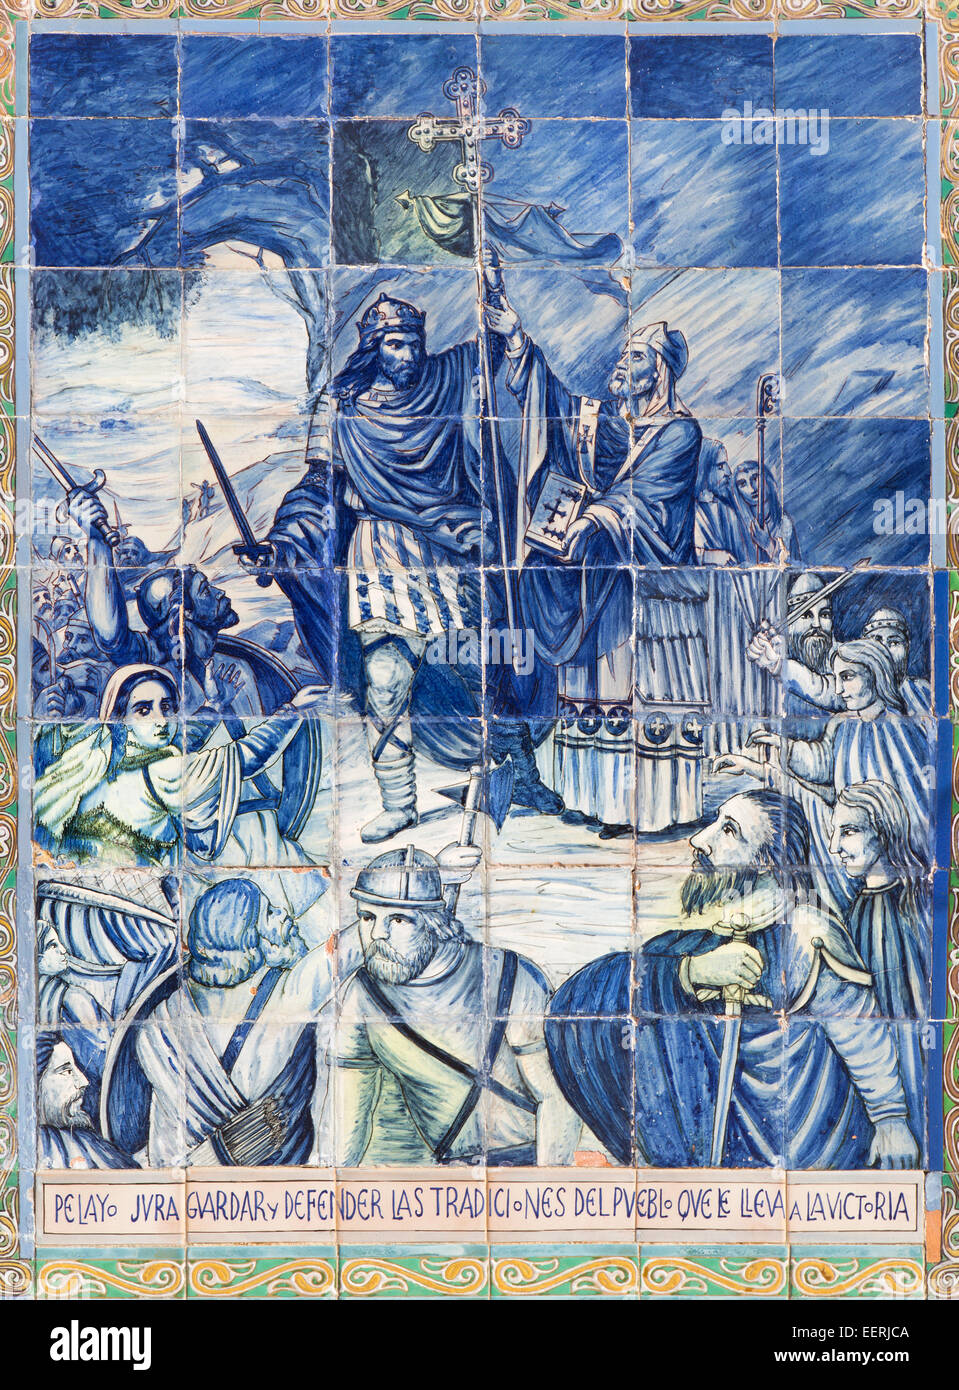 Sevilla - El Rey y el obispo como defensor de la cultura tradicional - Azulejos Provincia "nichos" a lo largo de las paredes de la Plaza de España Foto de stock